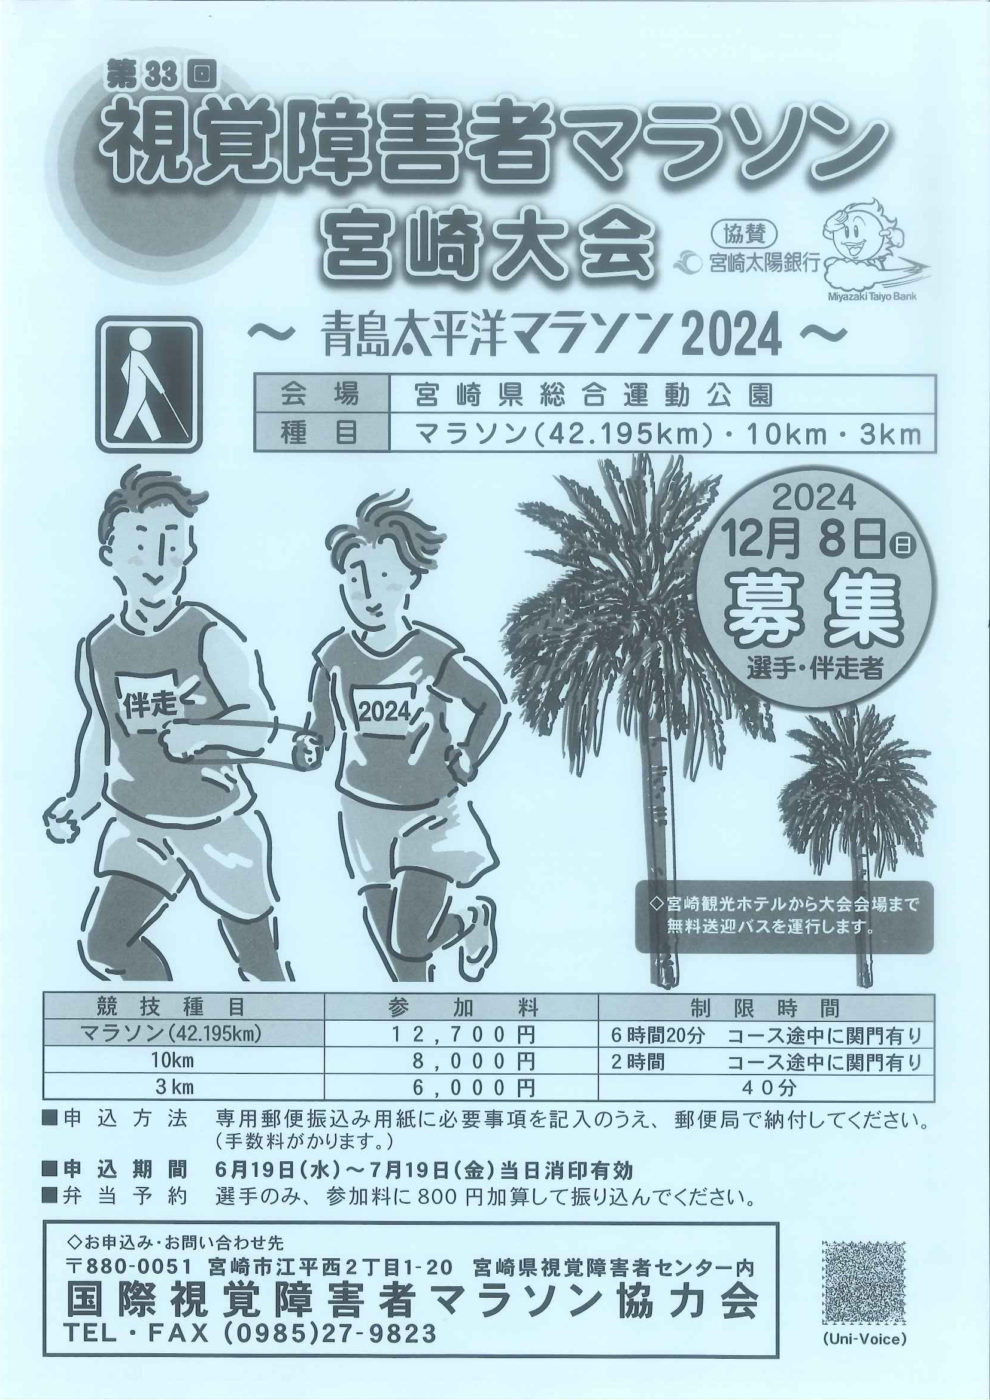 第33回視覚障害者マラソン宮崎大会～青島太平洋マラソン2024～